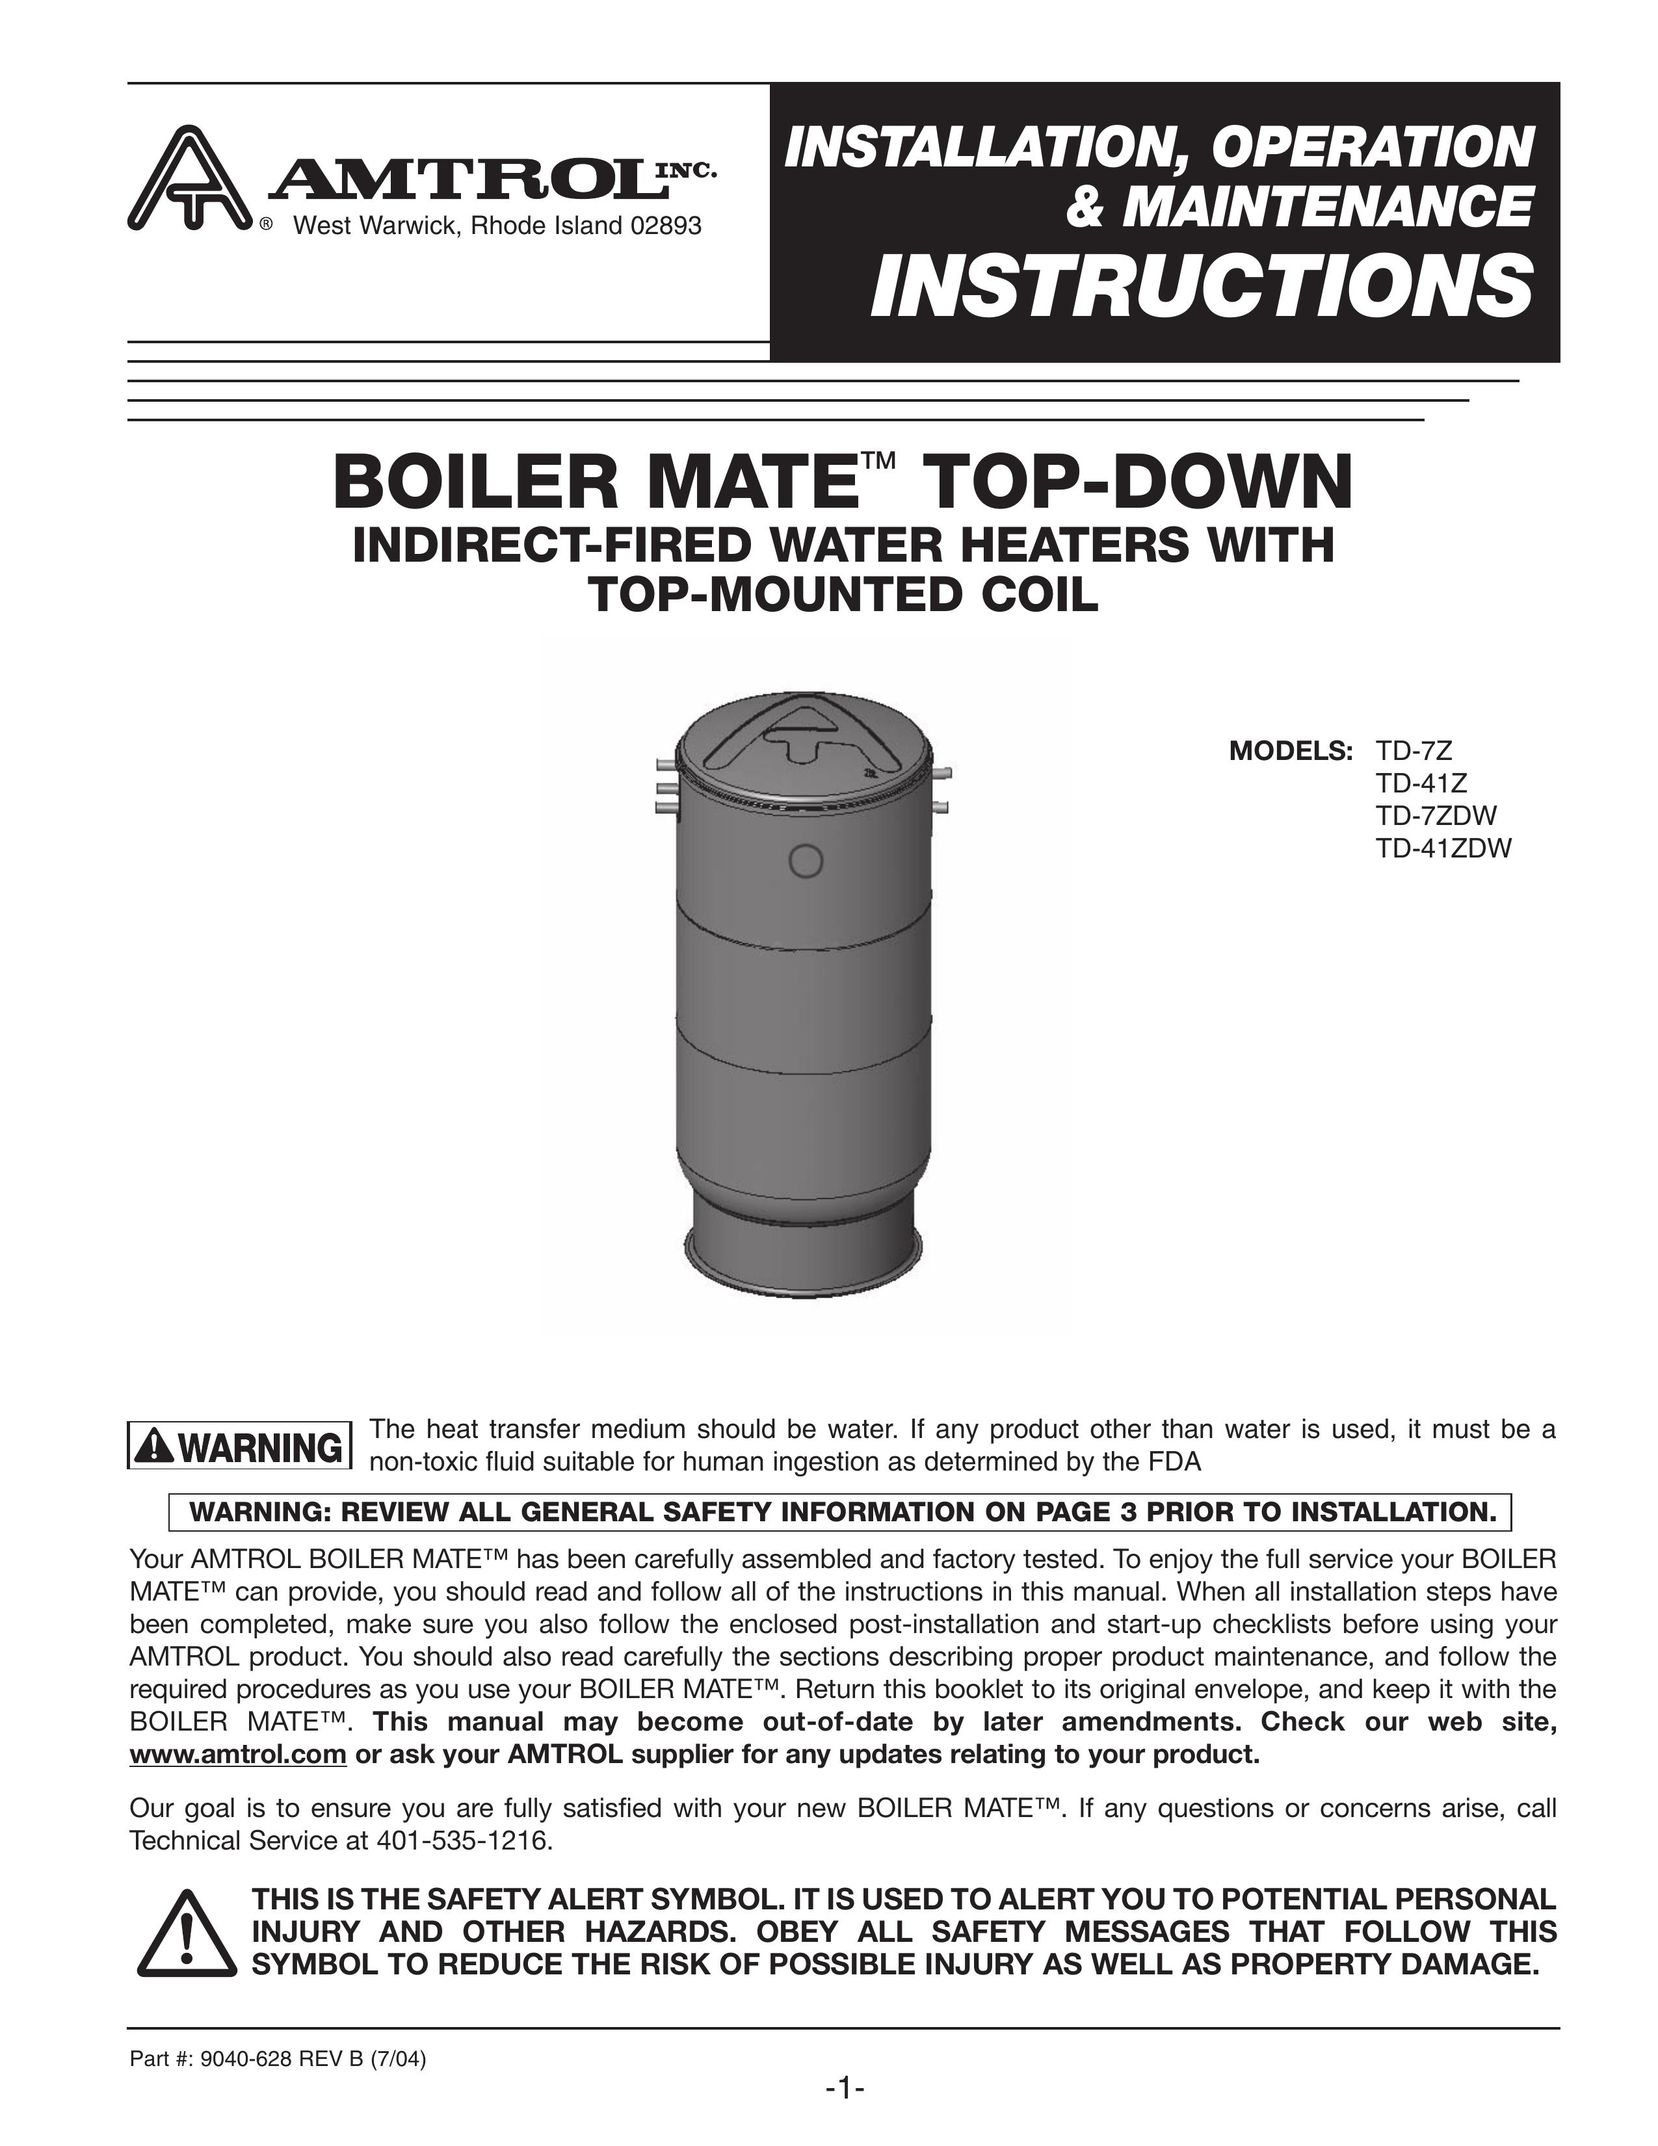 Amtrol TD-7ZDW Electric Heater User Manual